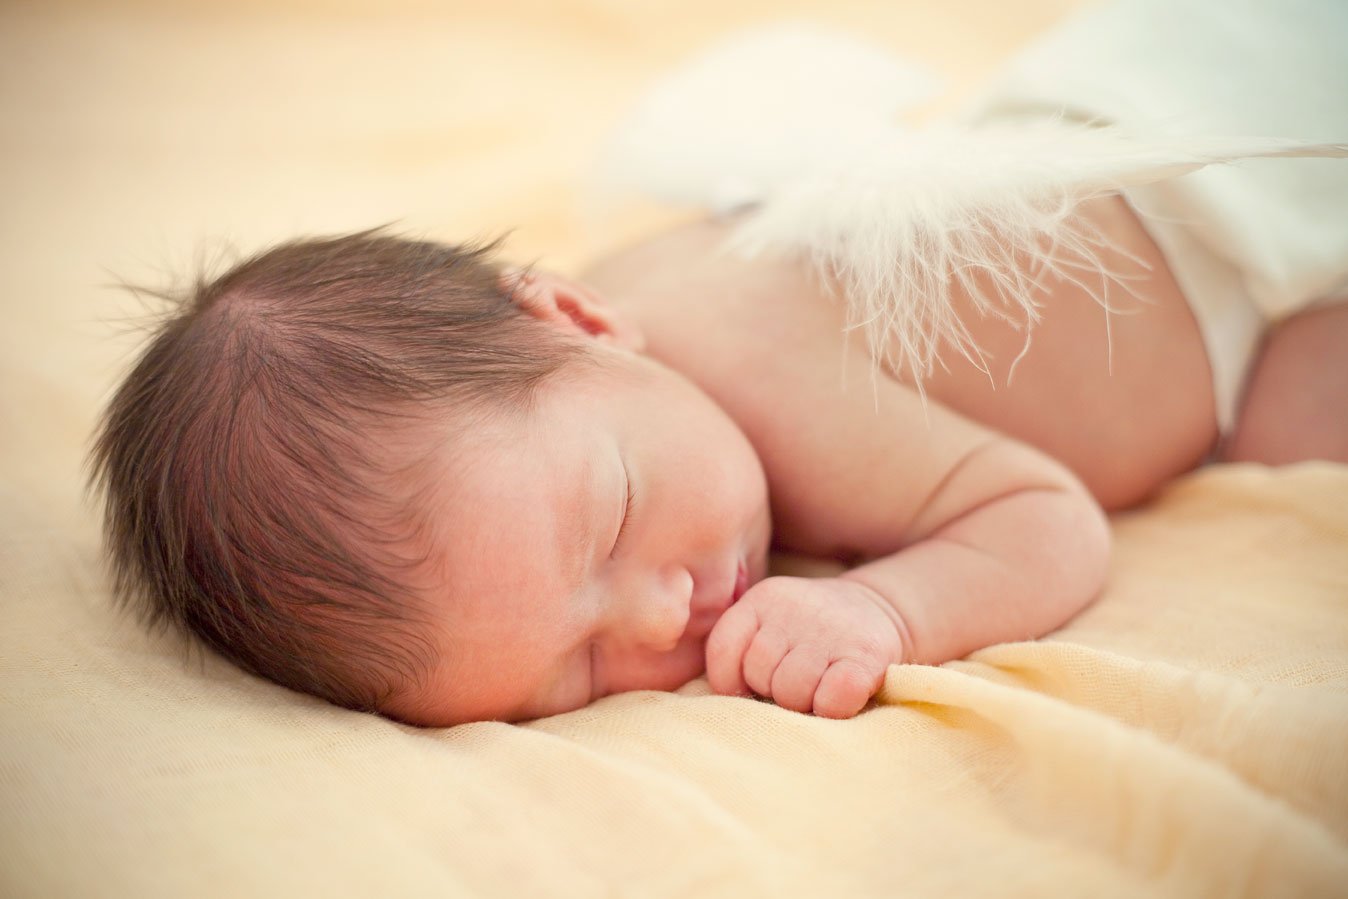 Fiorello Photography - Newborn